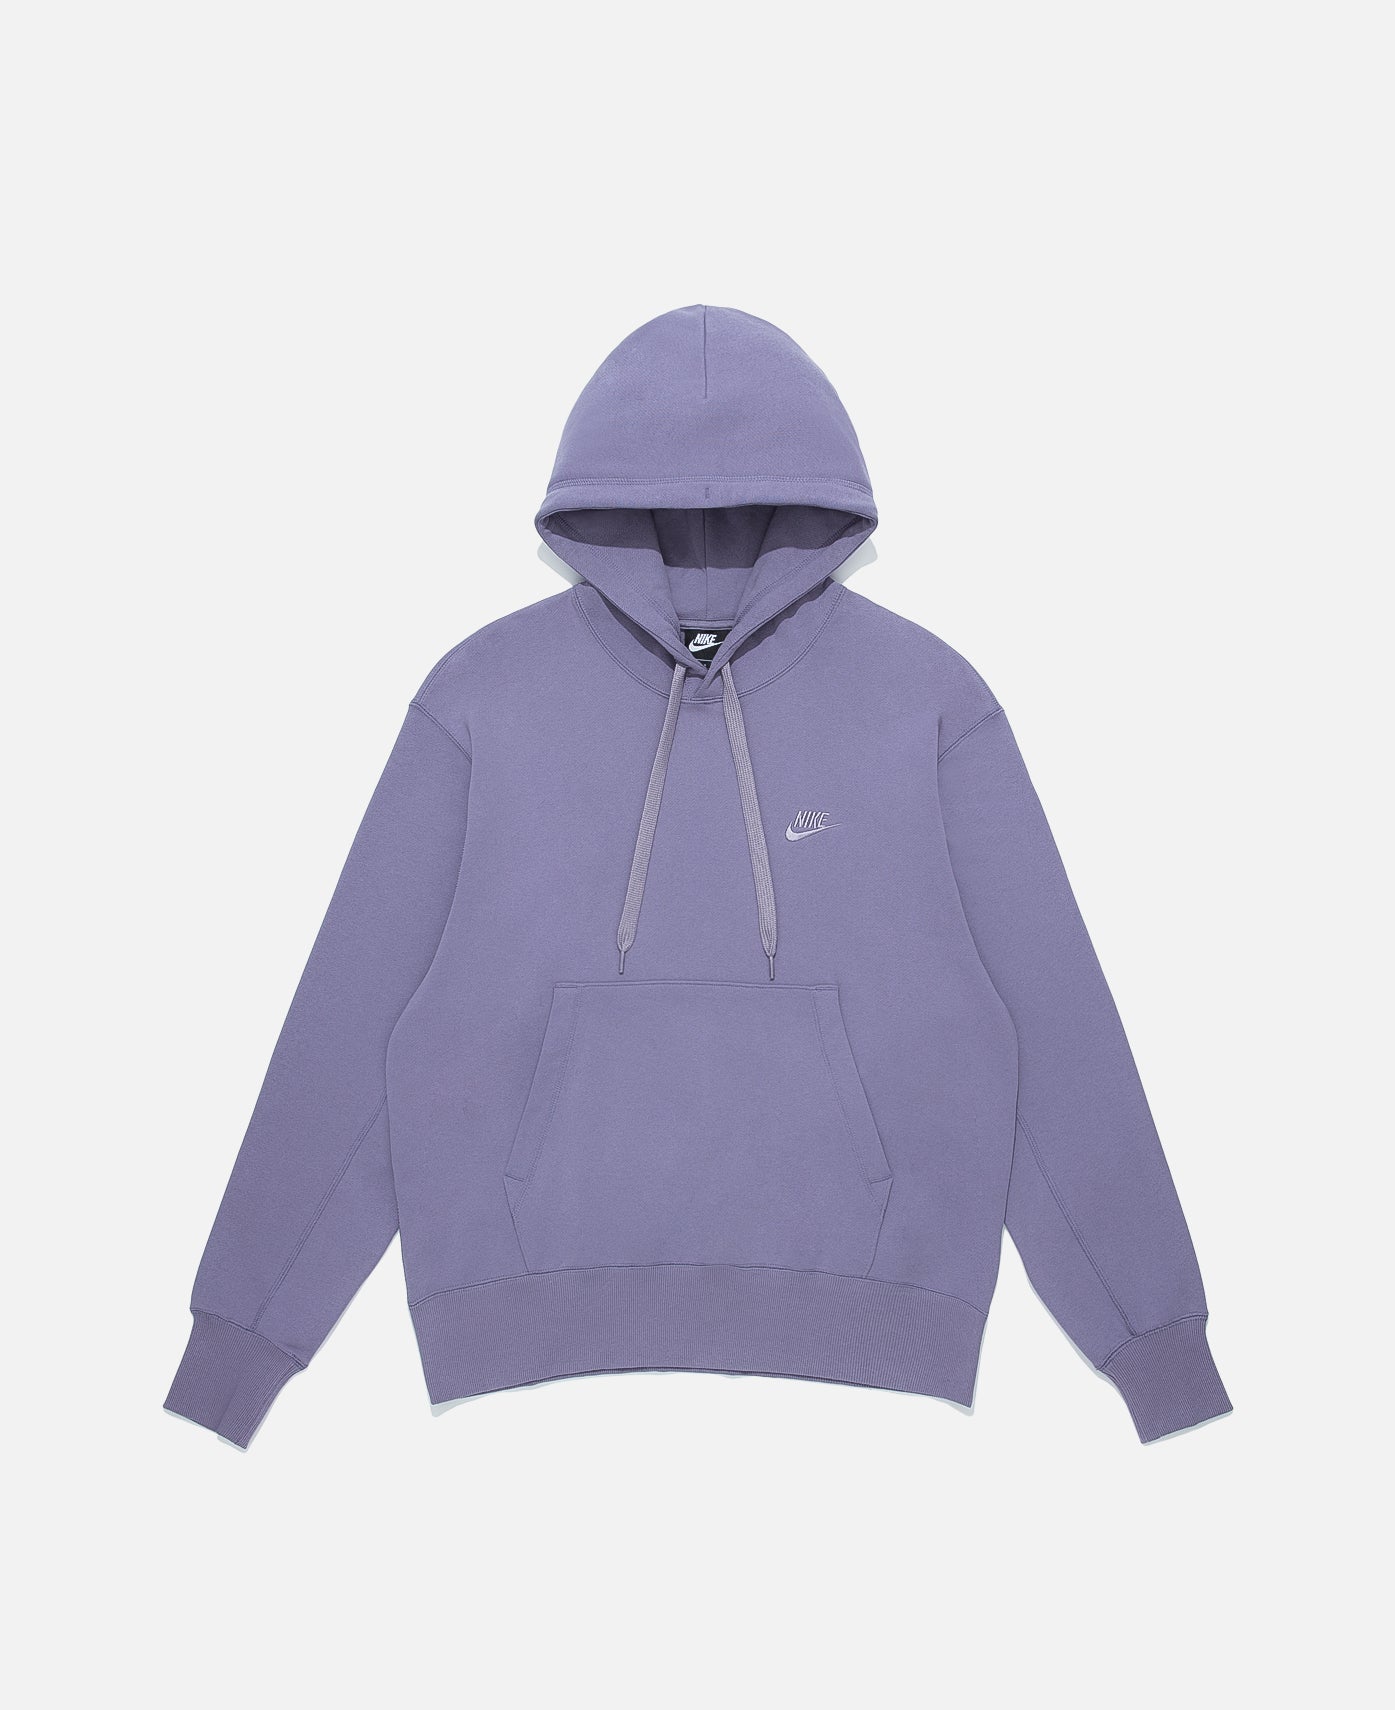 nike sb hoodie purple